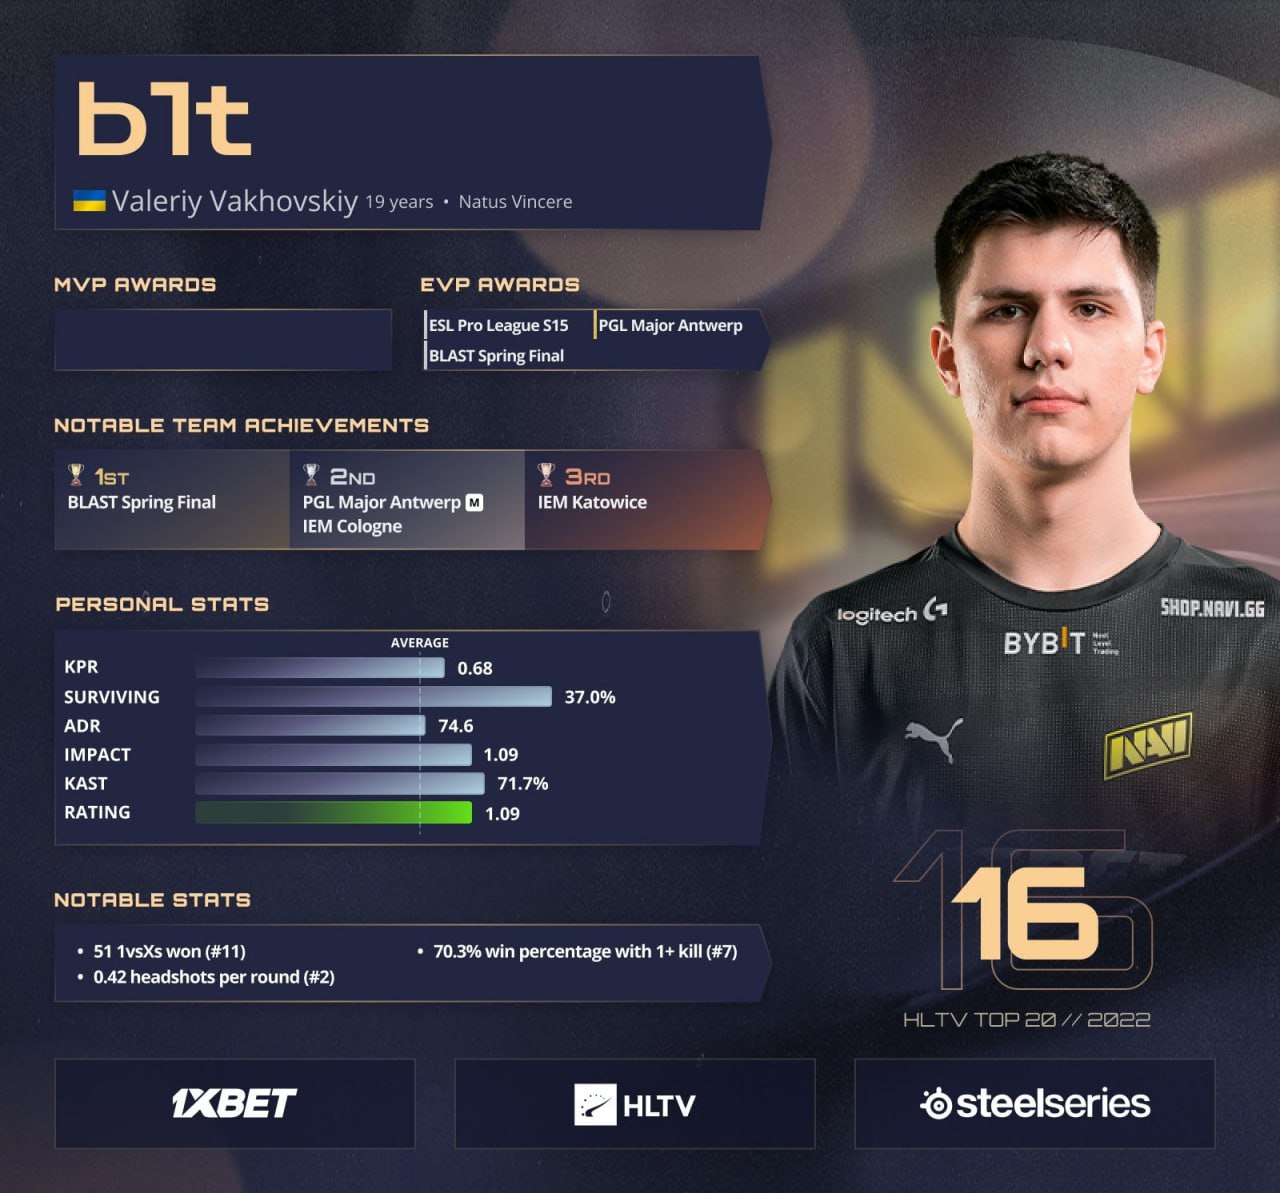 B1t занял 16 место в рейтинге лучших игроков 2022 года от HLTV